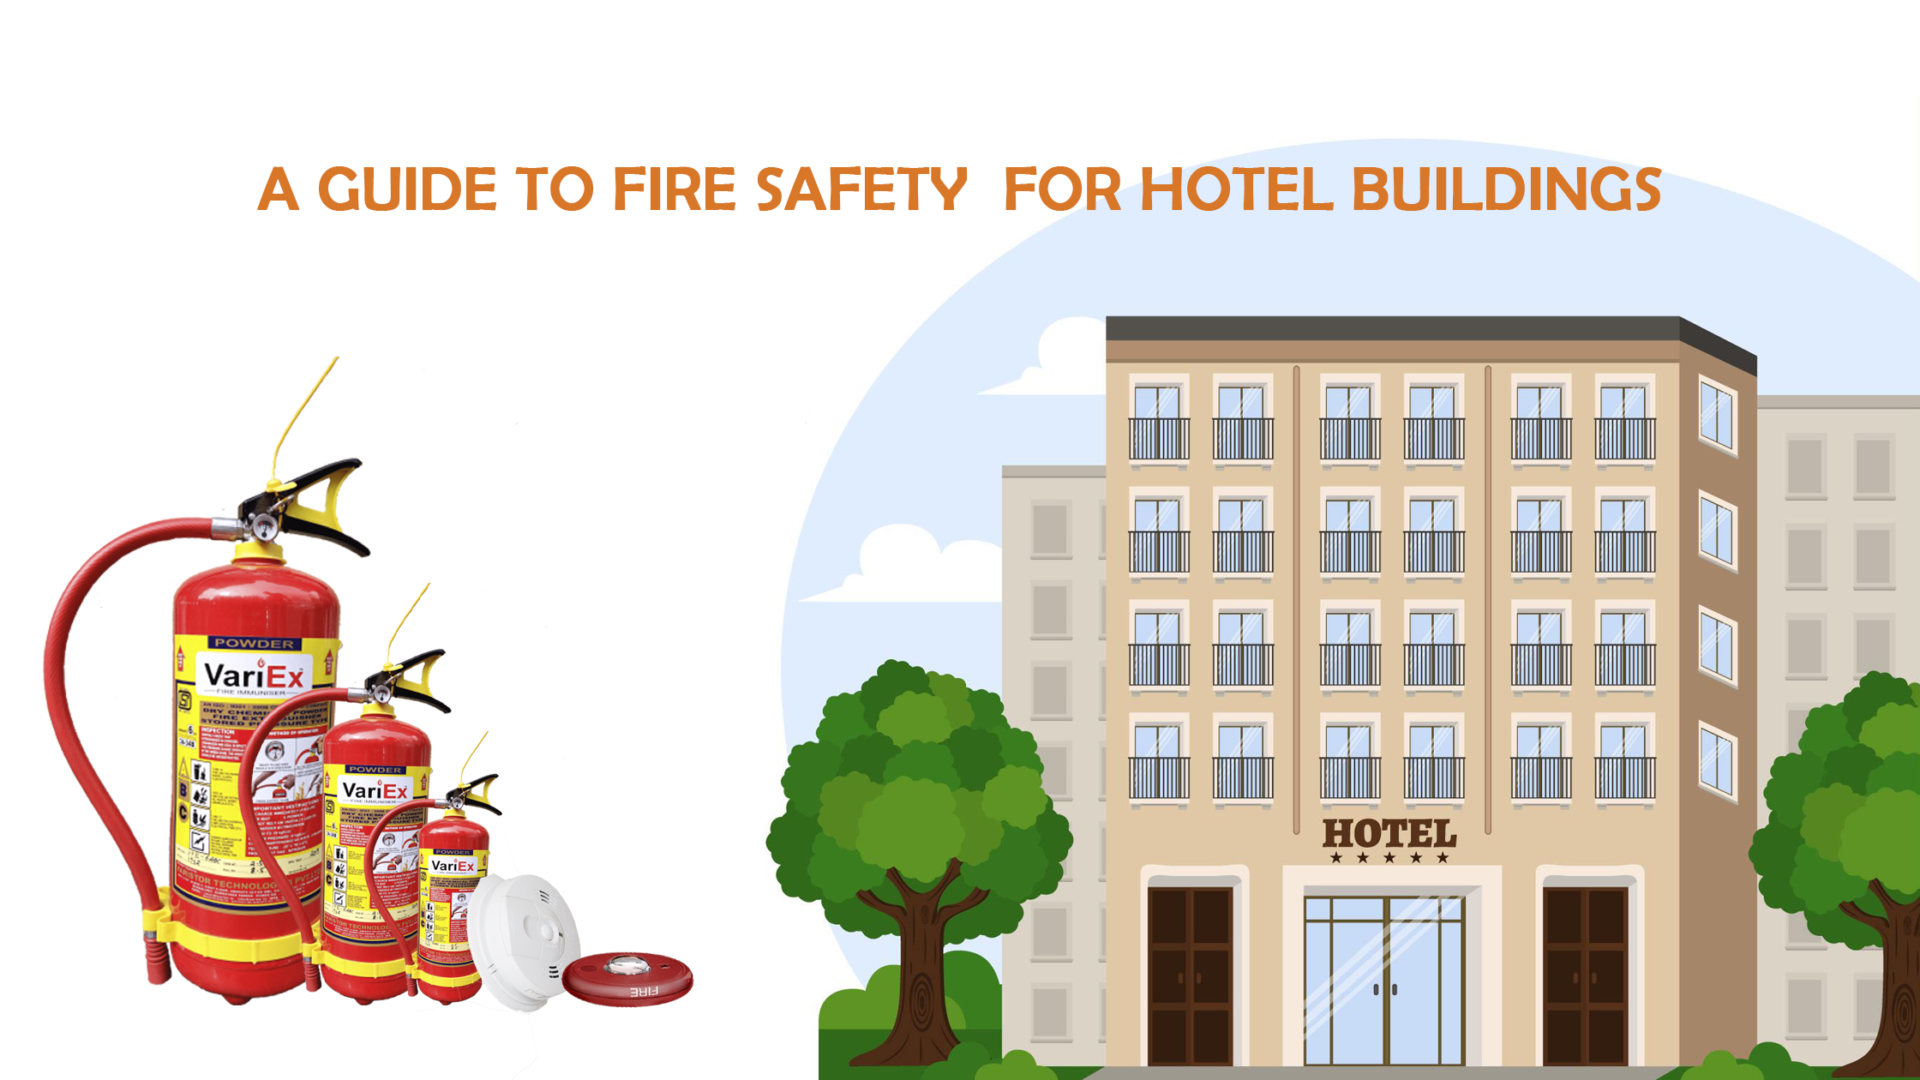 Guía de seguridad contra incendios para edificios de hoteles - Seguridad contra incendios en hoteles 5